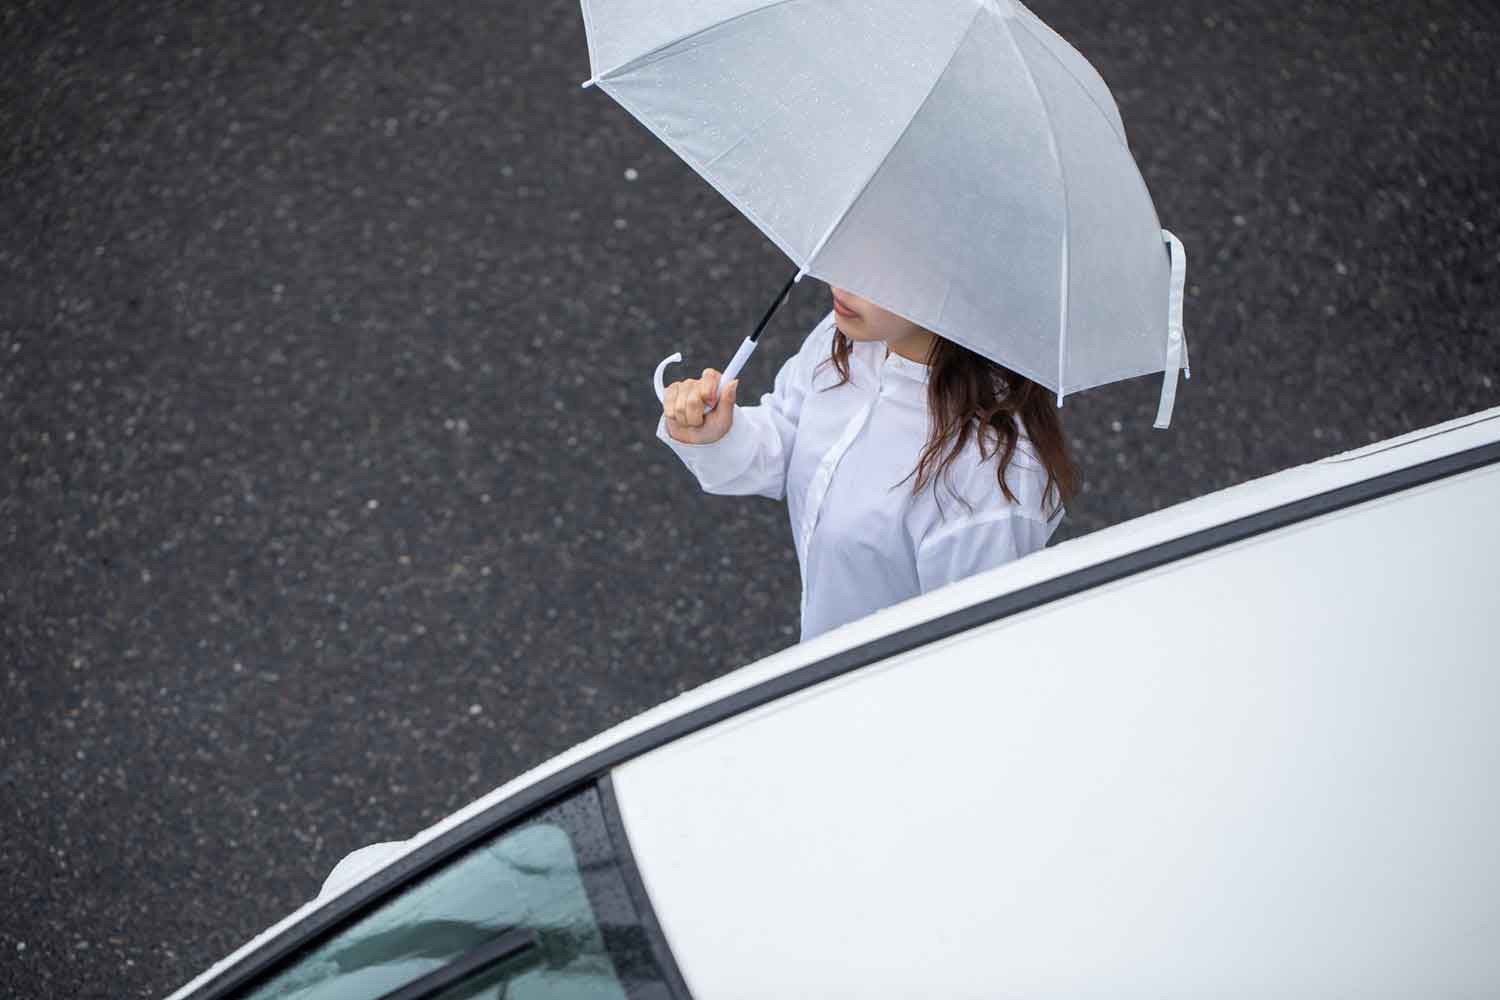 傘を持った女性がクルマ沿いに歩行している様子 〜 画像4